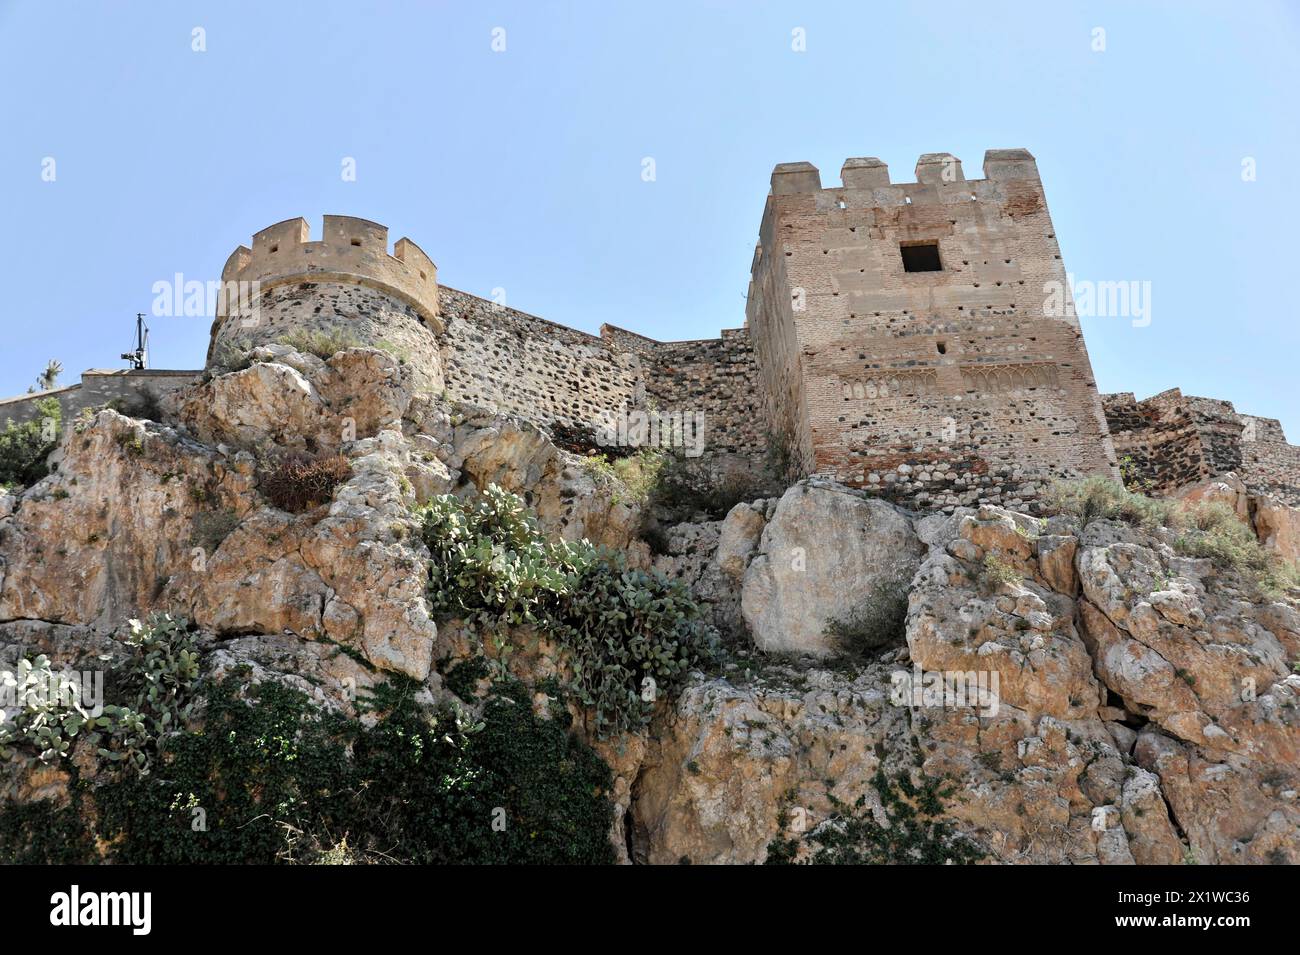 Solabrena, antica fortezza del castello su una roccia con merlature e torri, segni di rovina e decadimento, Costa del Sol, Andalusia, Spagna Foto Stock